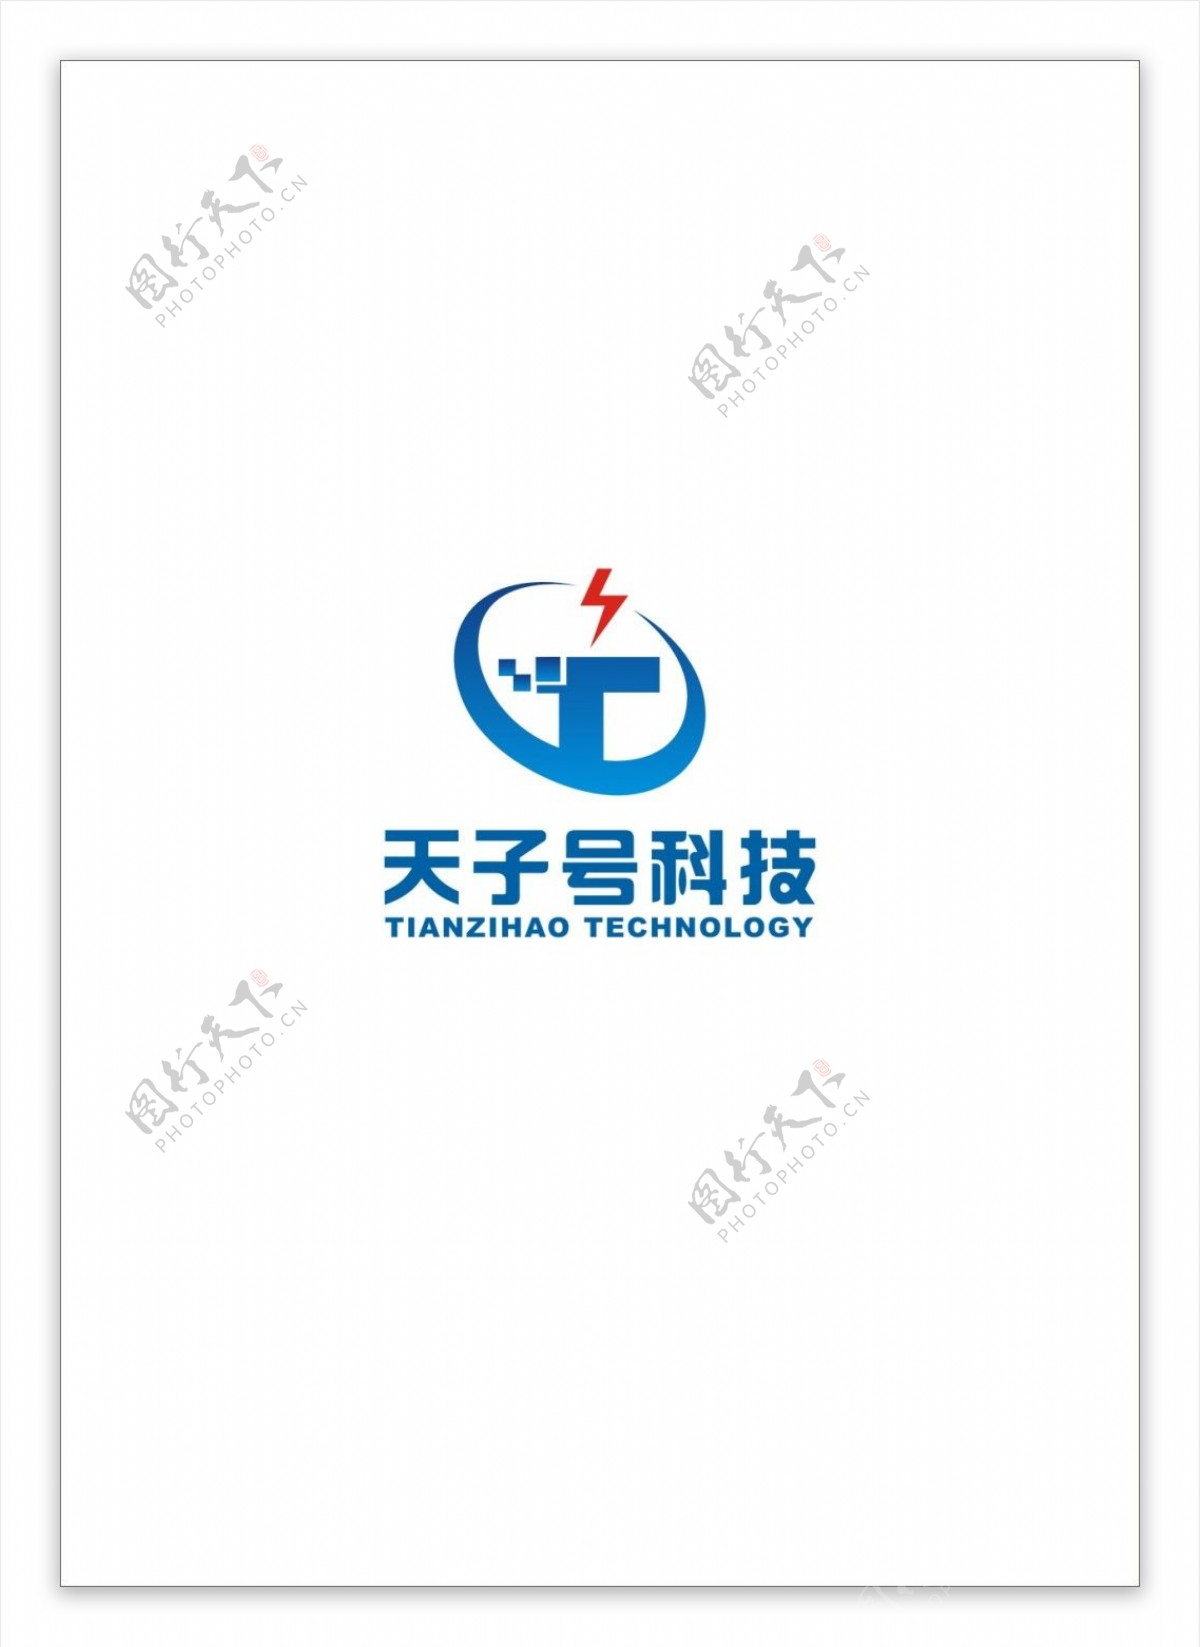 天子号科技公司logo设计欣赏